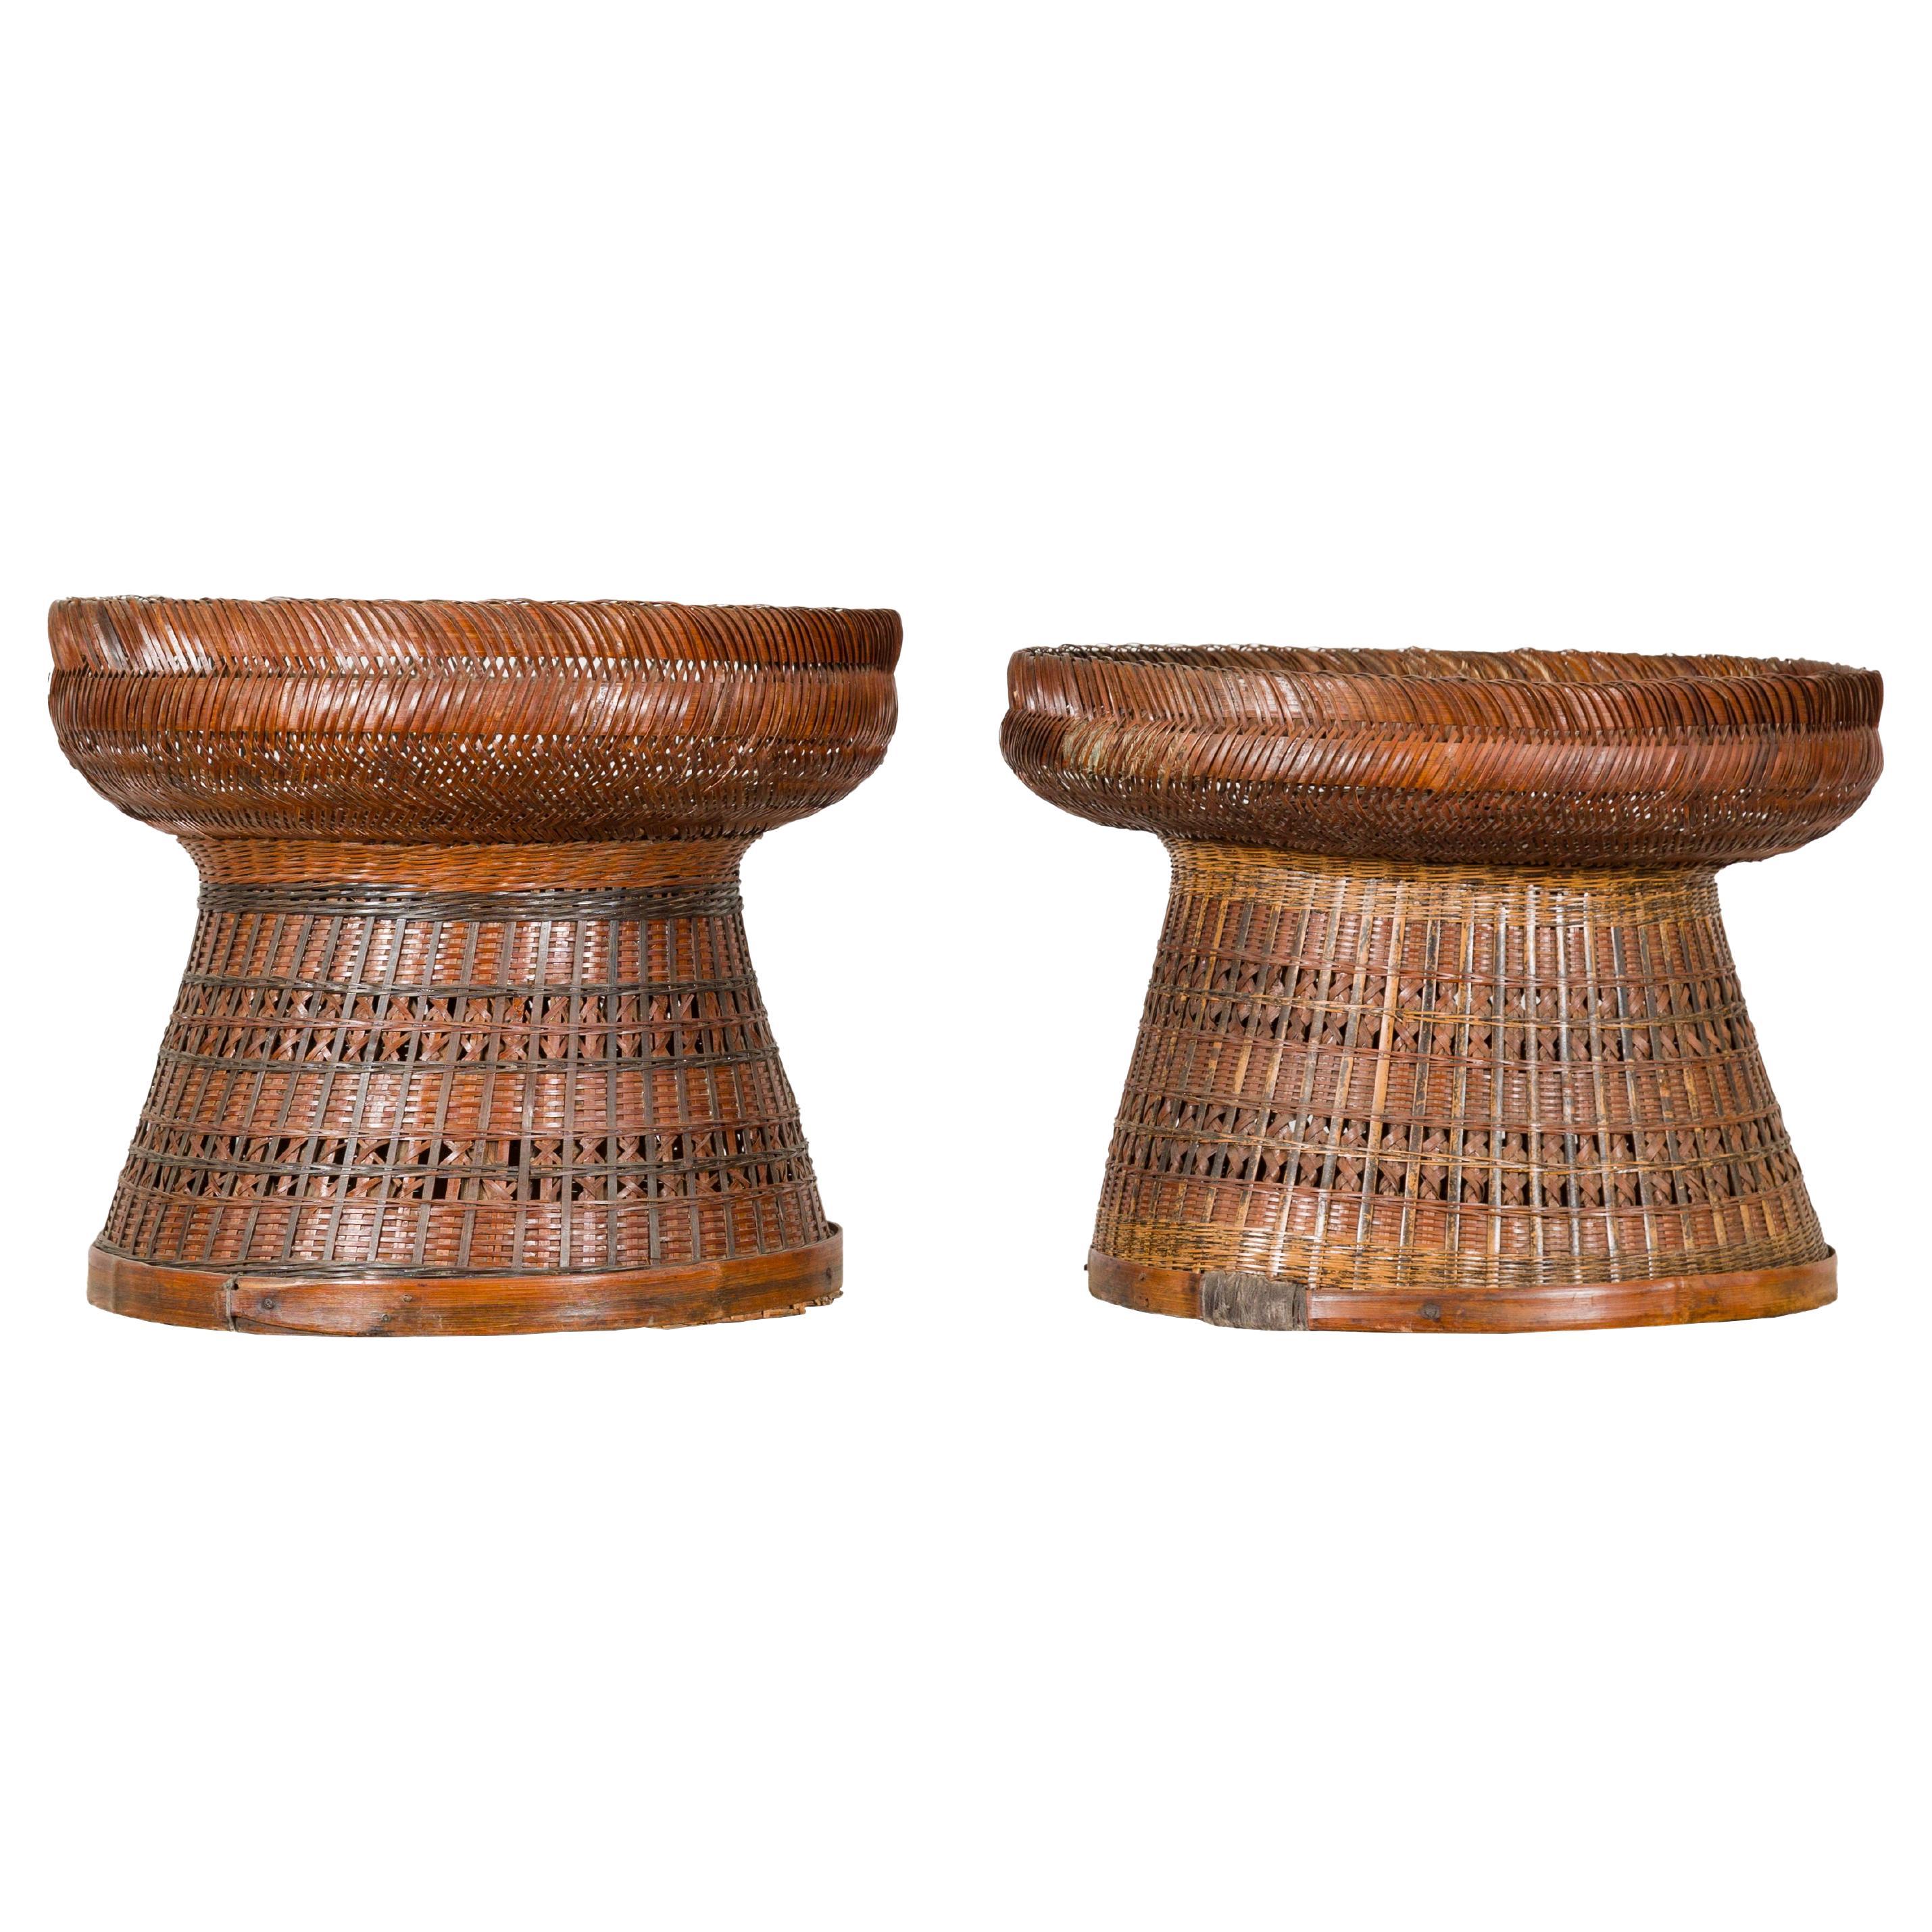 Antike gewebte Rattankörbe mit kreisförmiger Platte und sich verjüngendem Sockel, pro Stück verkauft im Angebot